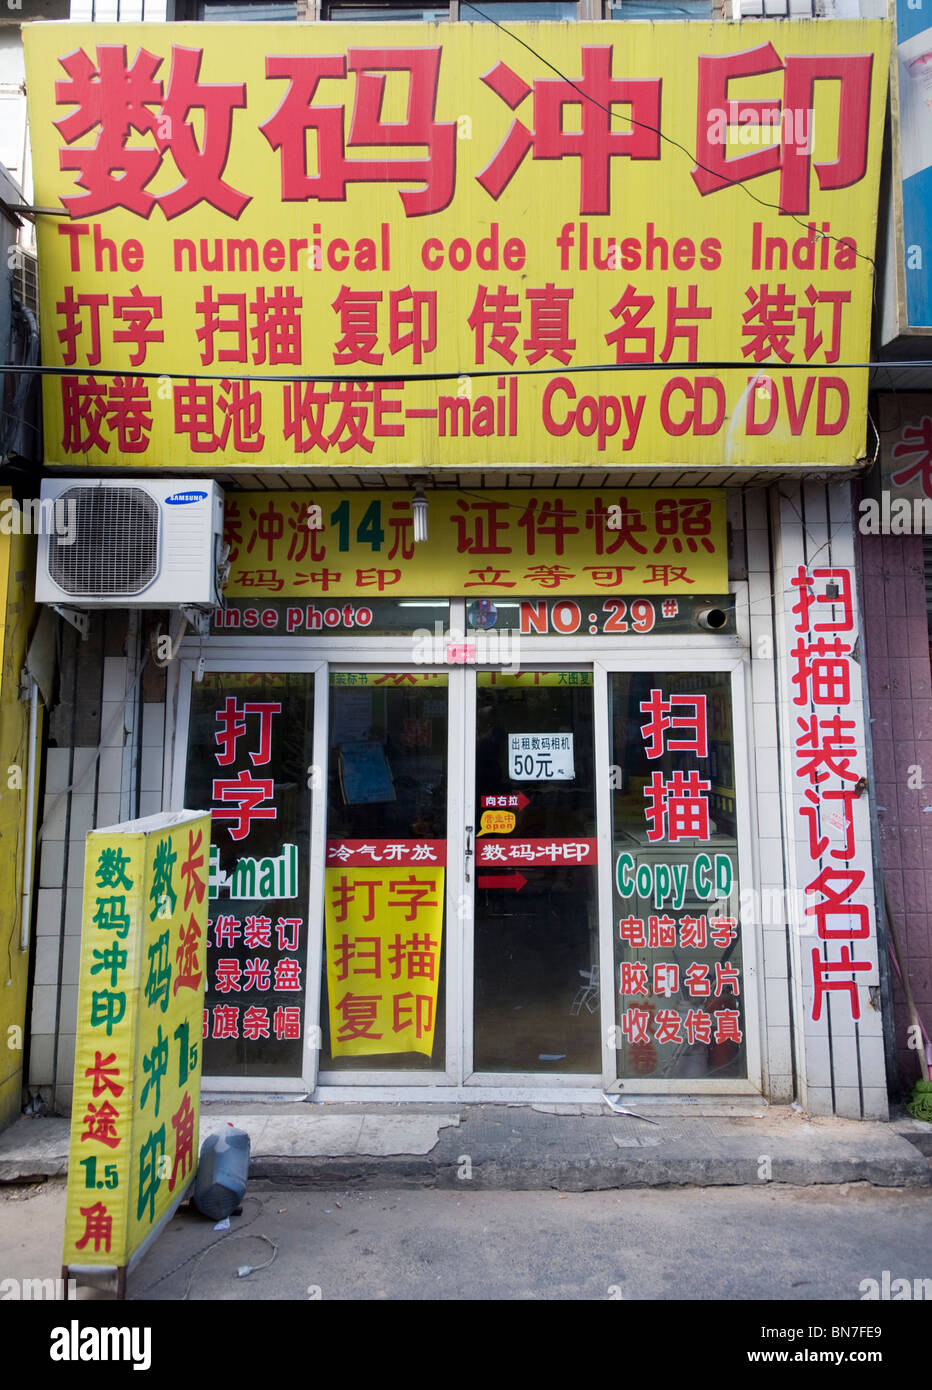 Lustige englische Zeichen schlecht übersetzt aus dem chinesischen über Kopier- und Fax laden in Peking China Stockfoto